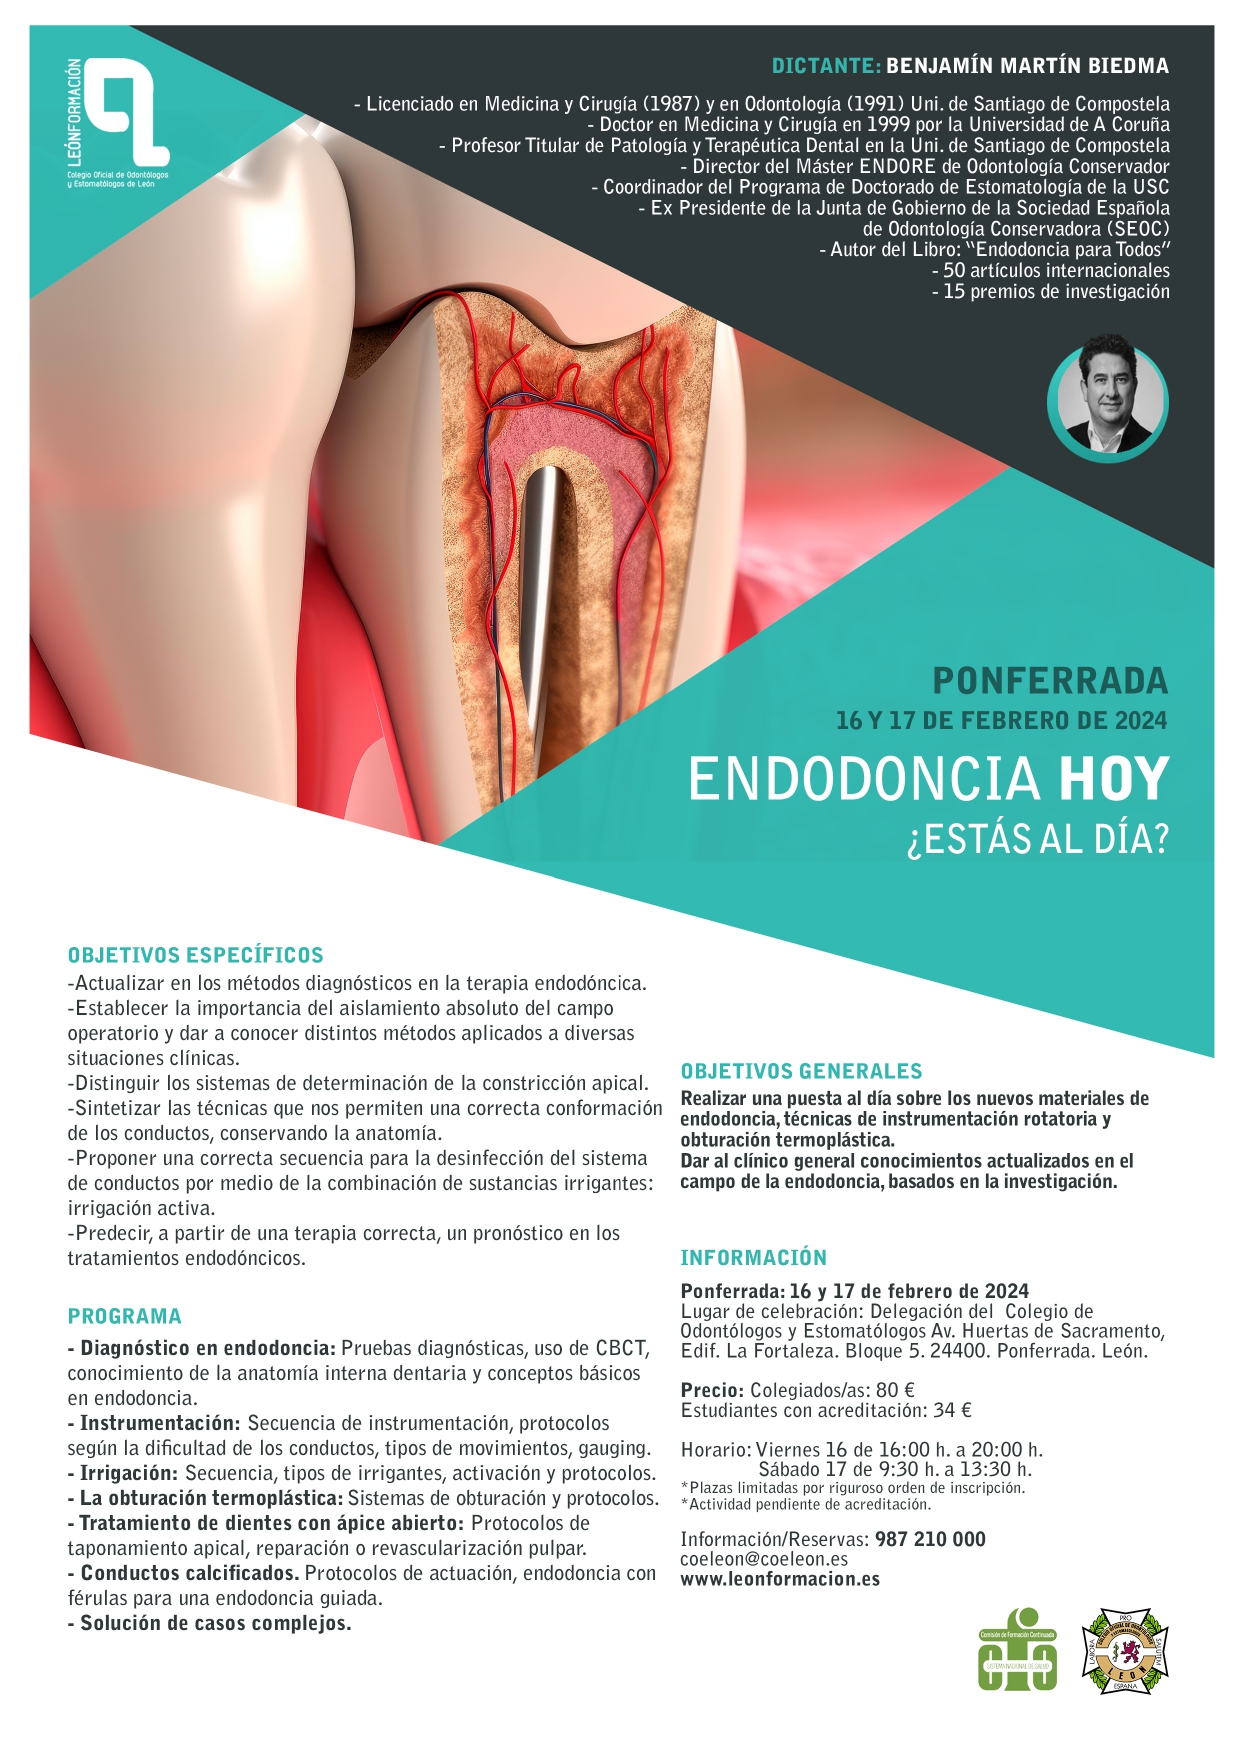 Endodoncia hoy: ¿Estás al día?